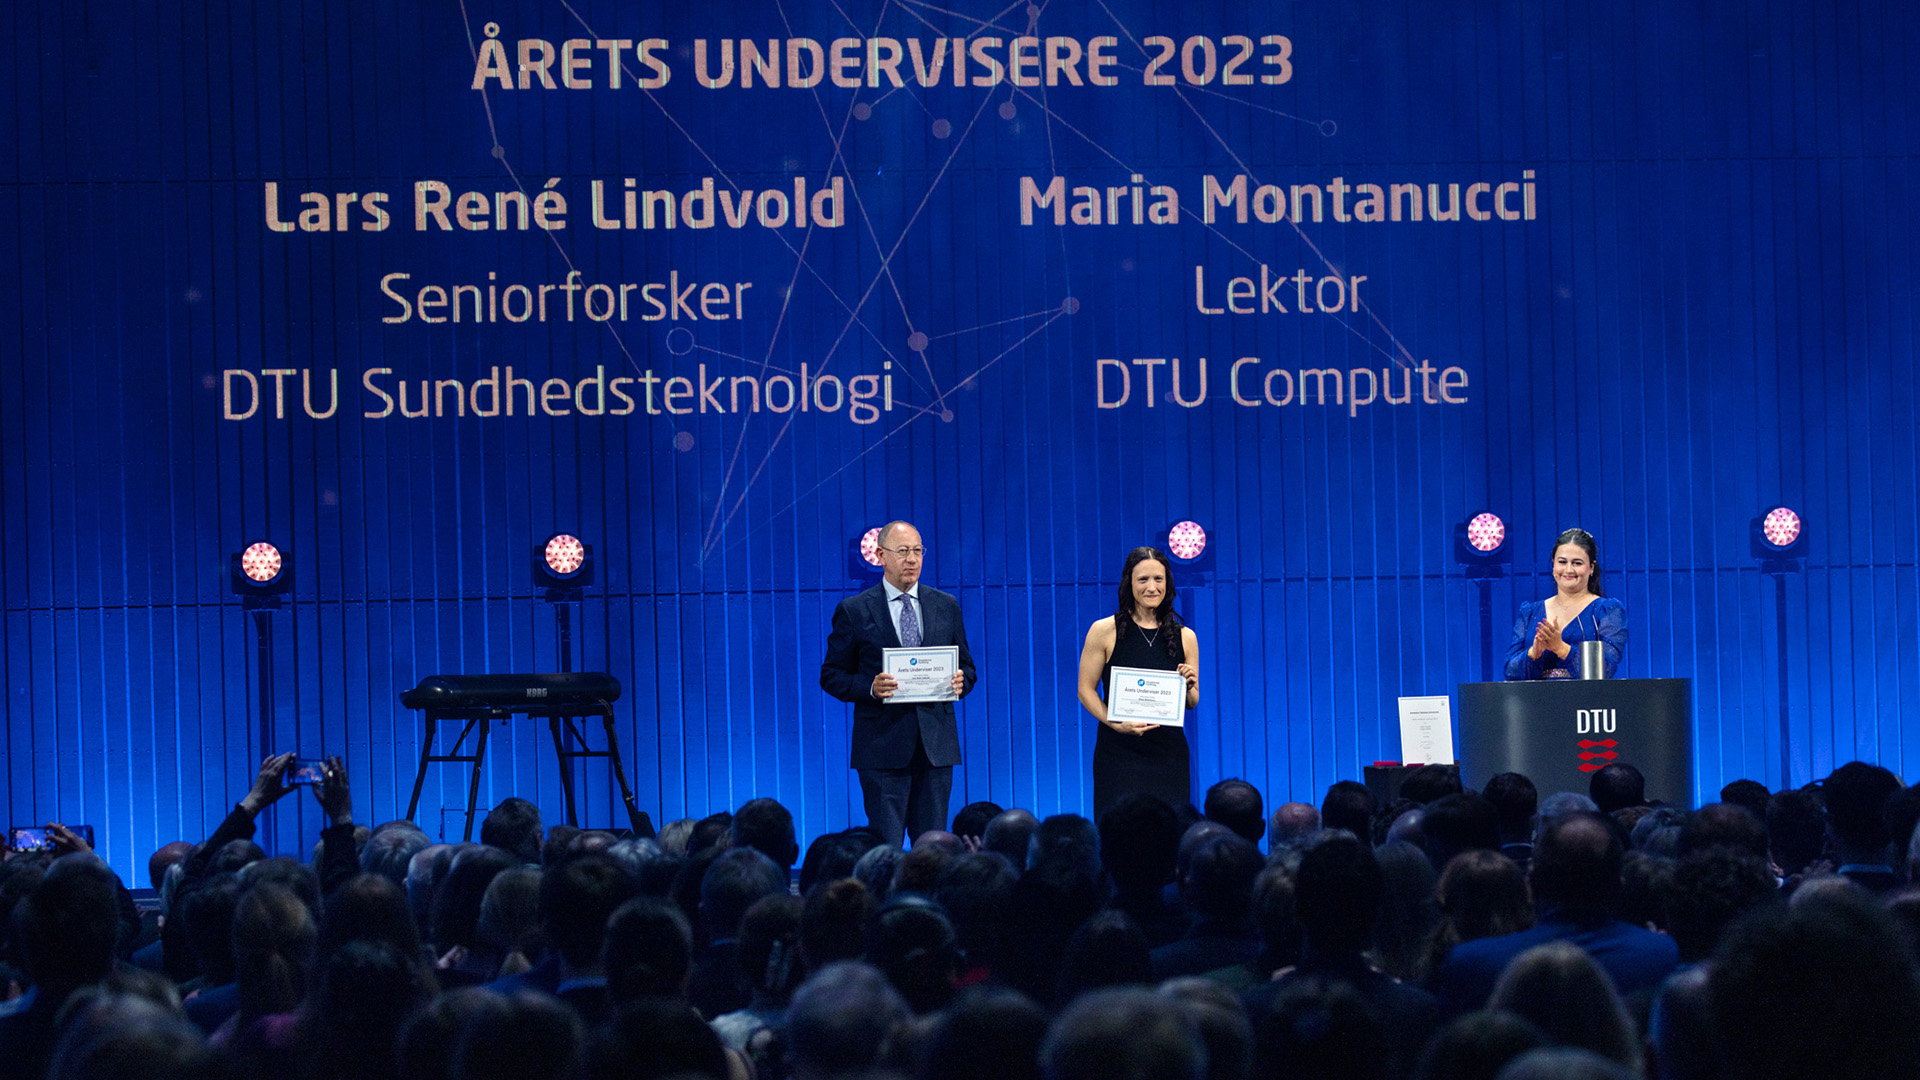 Hvert år udpeger de DTU-studerende årets undervisere. I år gik hæderen til Maria Montanucci, der er lektor på DTU Compute og Lars René Lindvold, der er seniorforsker på DTU Sundhedsteknologi.